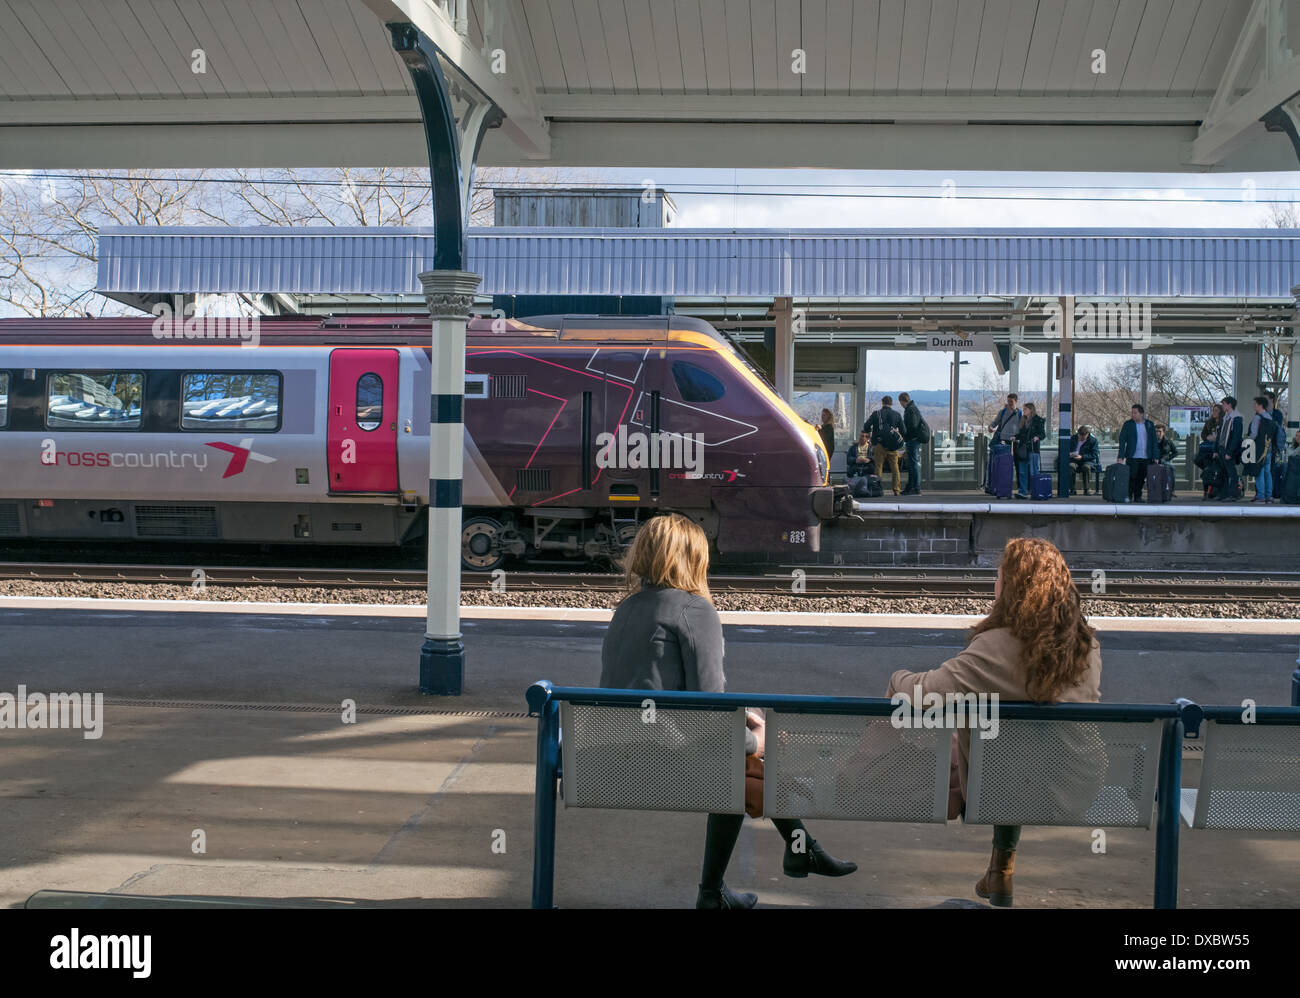 Cross Country train arrivant en gare ferroviaire de la ville de Durham North East England UK Mars 2014 Banque D'Images